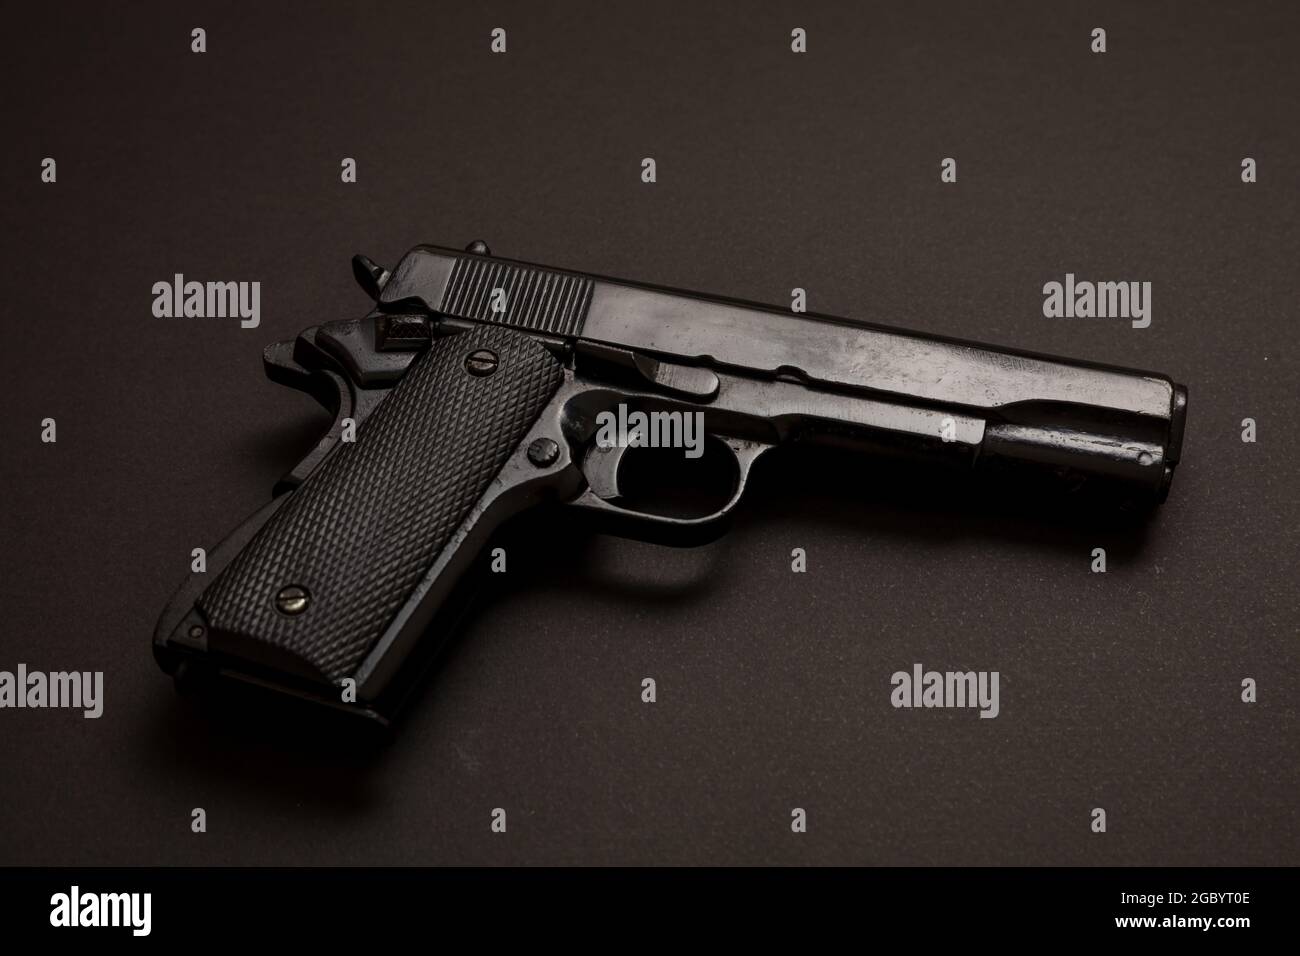 Pistolet de pistolet 9 mm sur fond noir. Arme en métal noir, arme de poing automatique pour l'armée et la sécurité. Vue latérale Banque D'Images